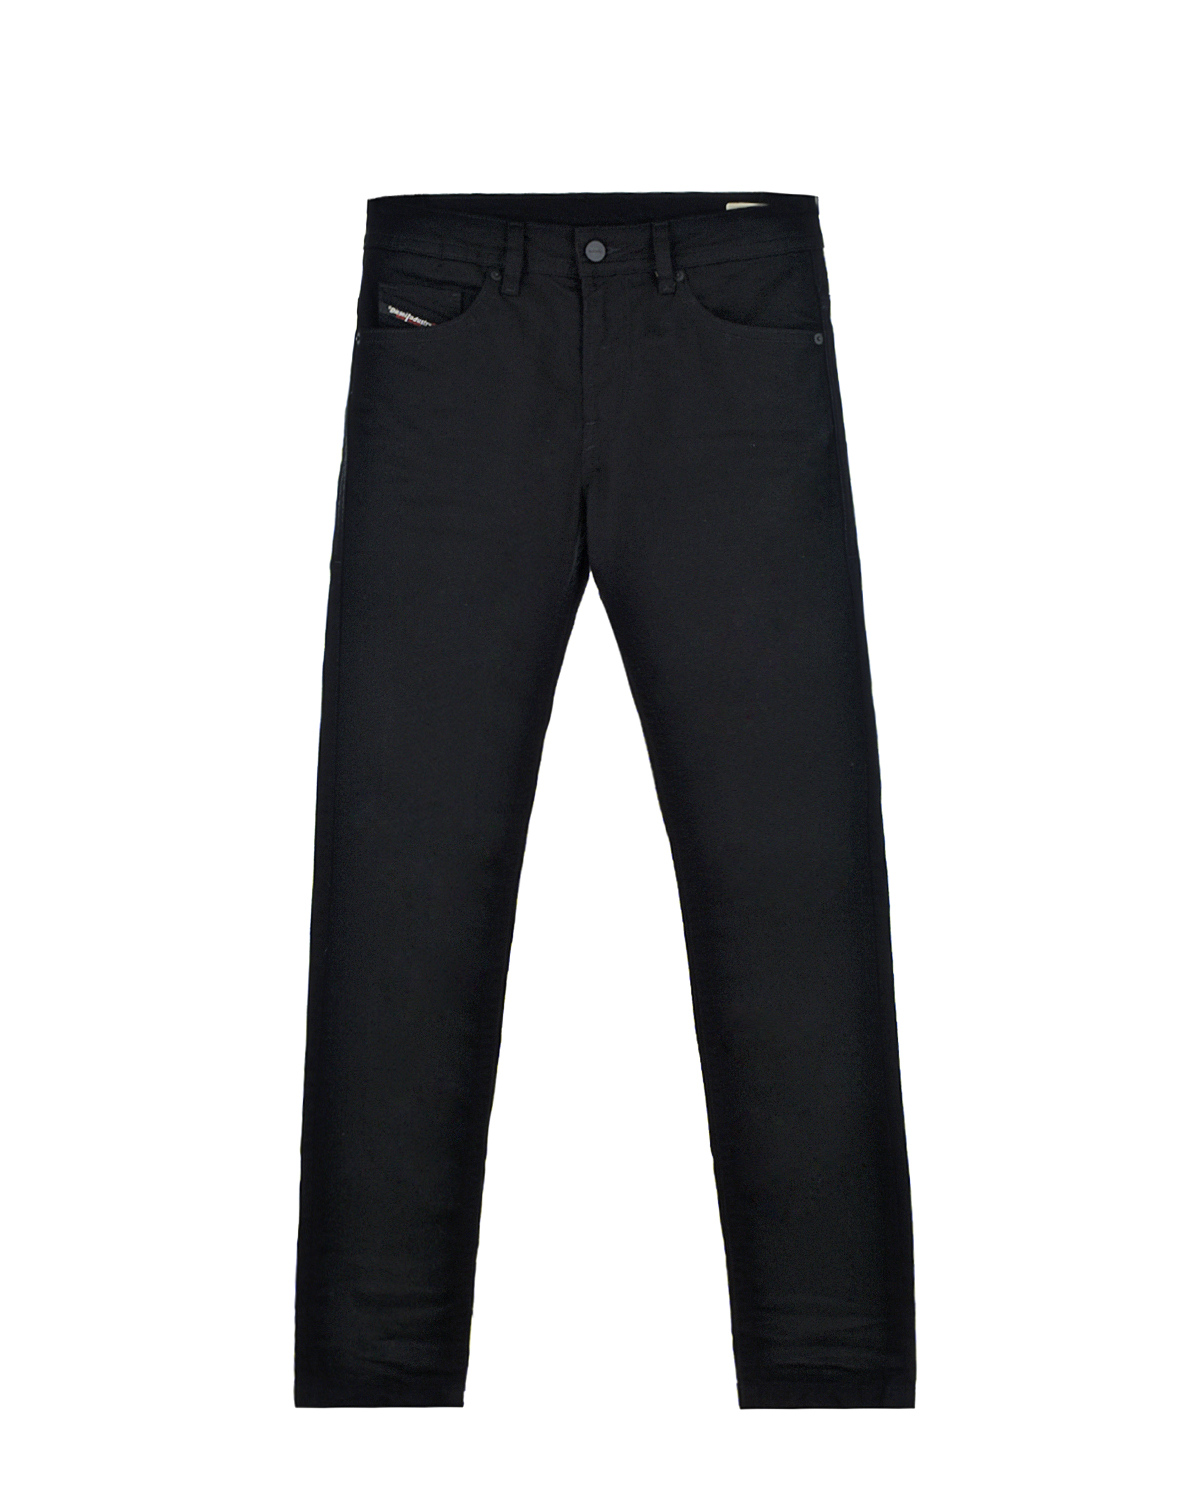 Узкие джинсы для мальчиков Diesel детские, размер 116, цвет черный - фото 1